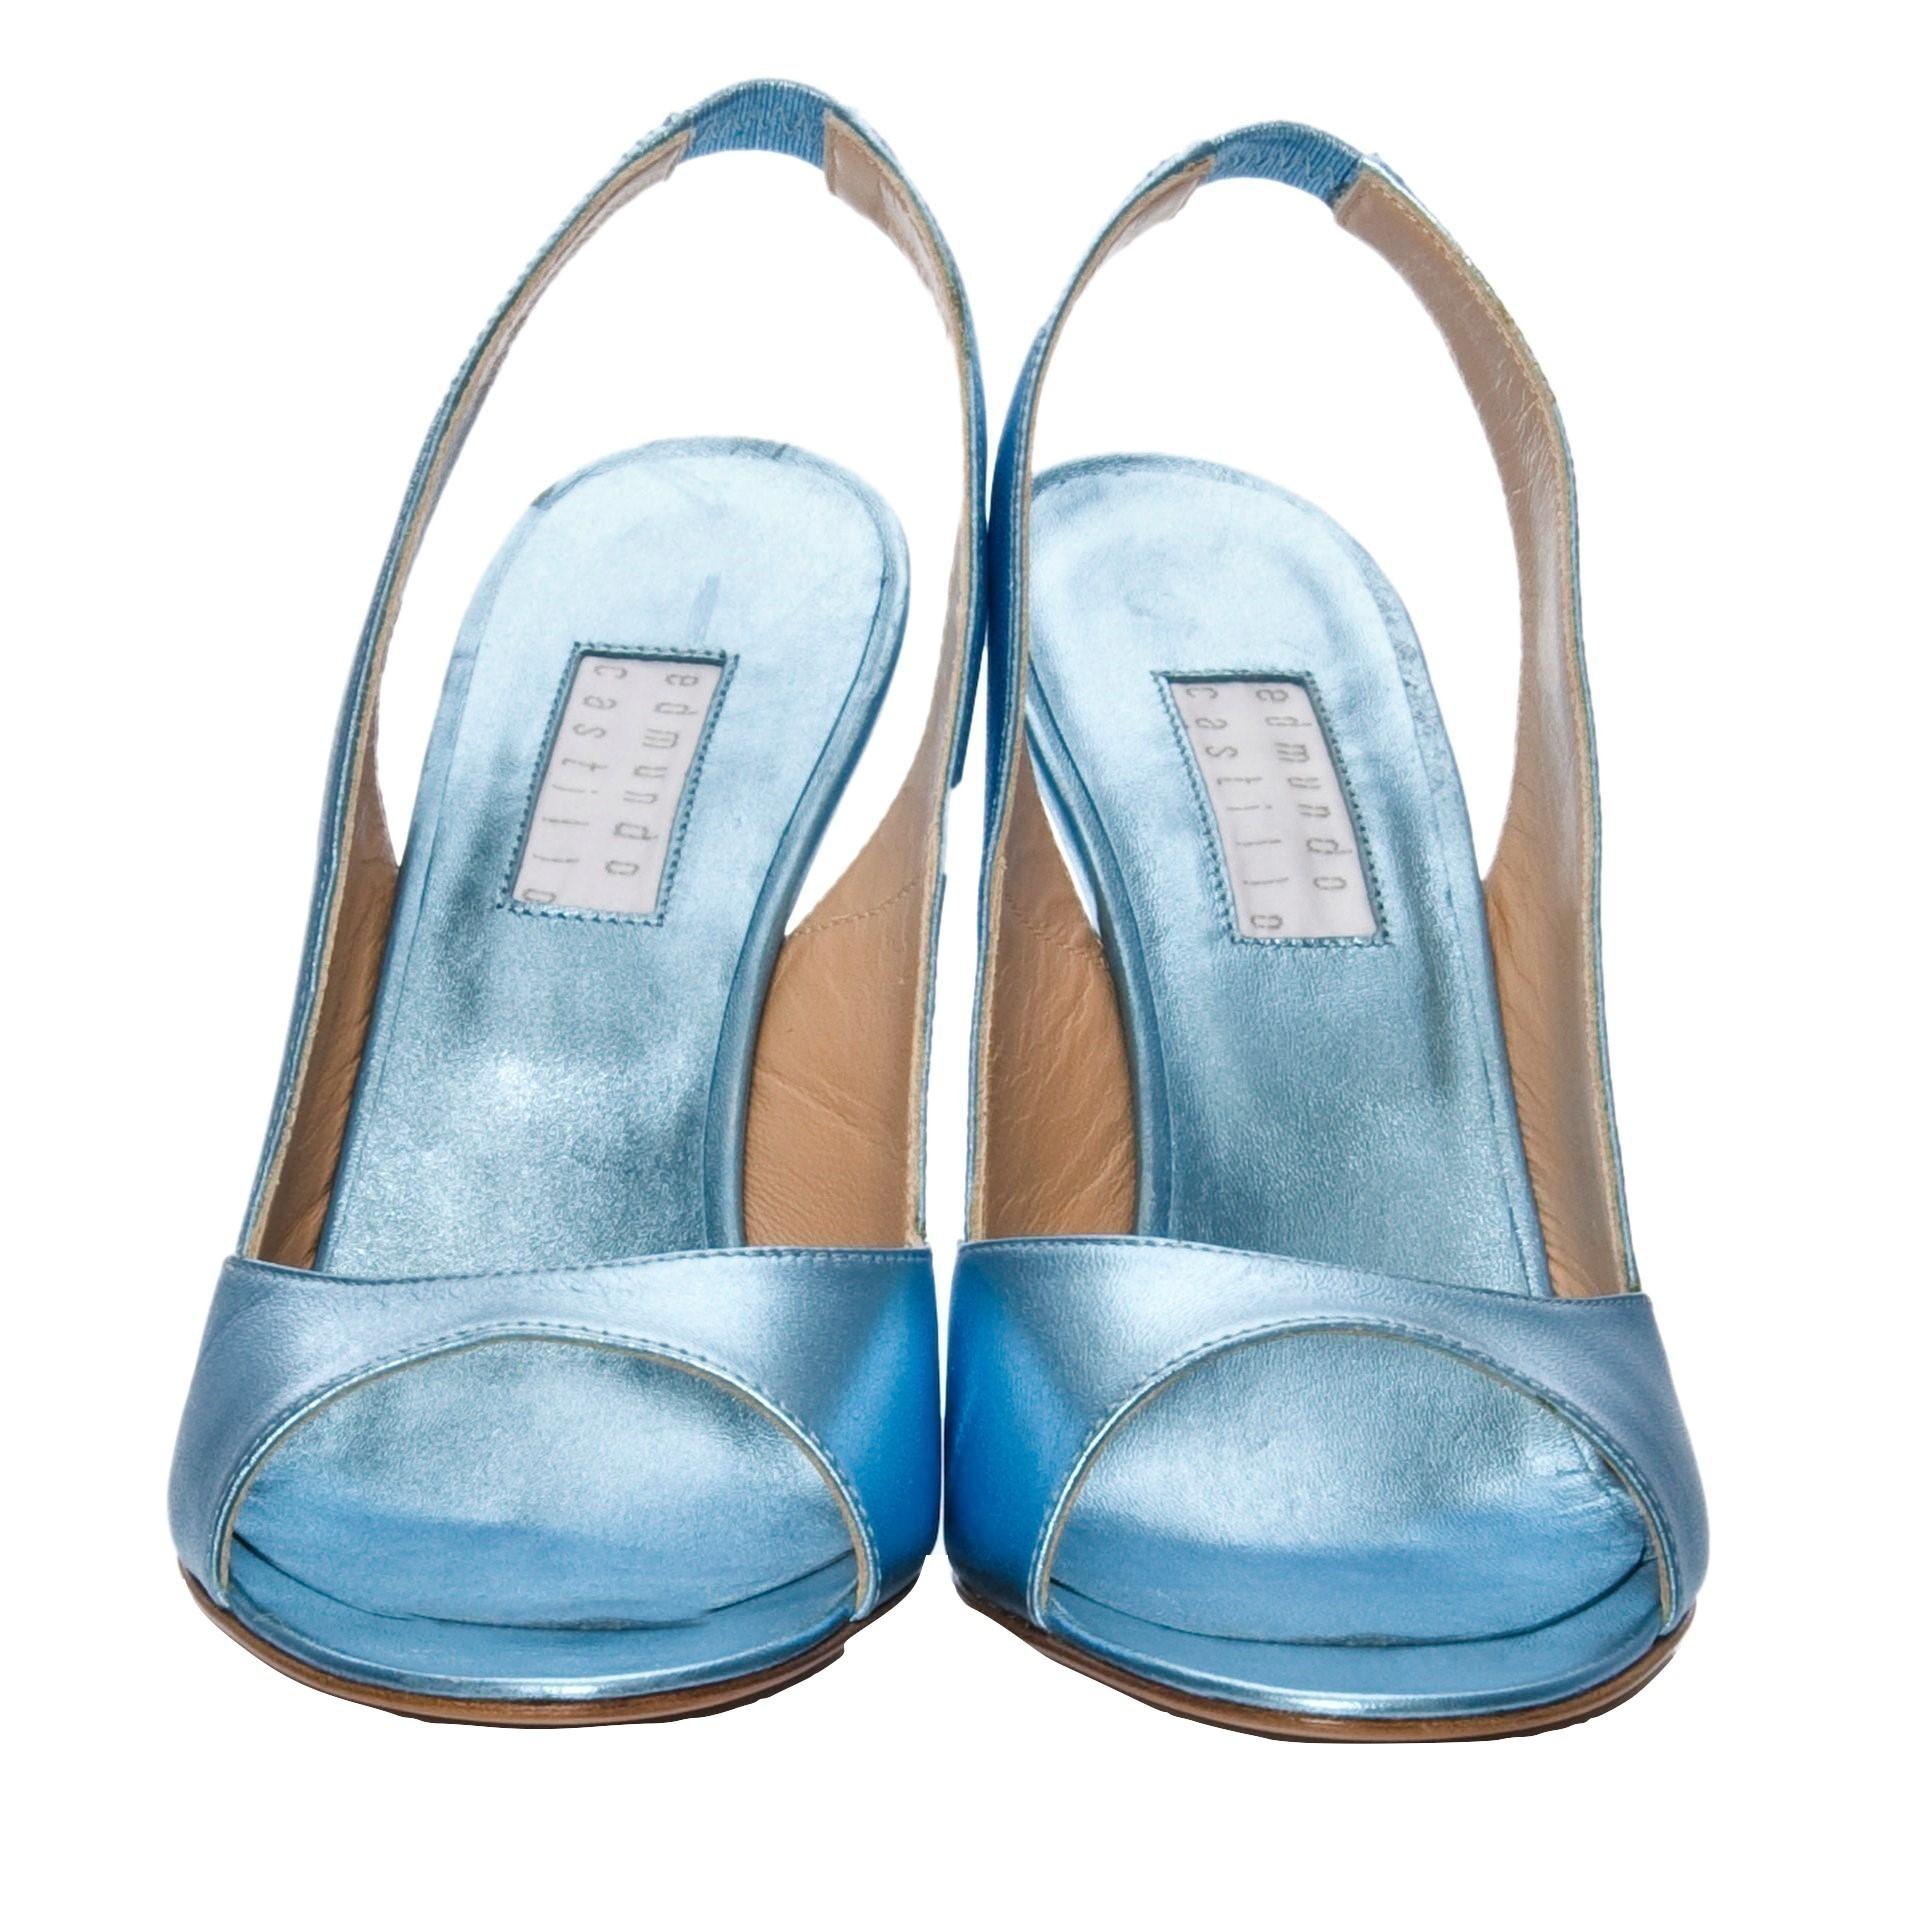 blue metallic heels